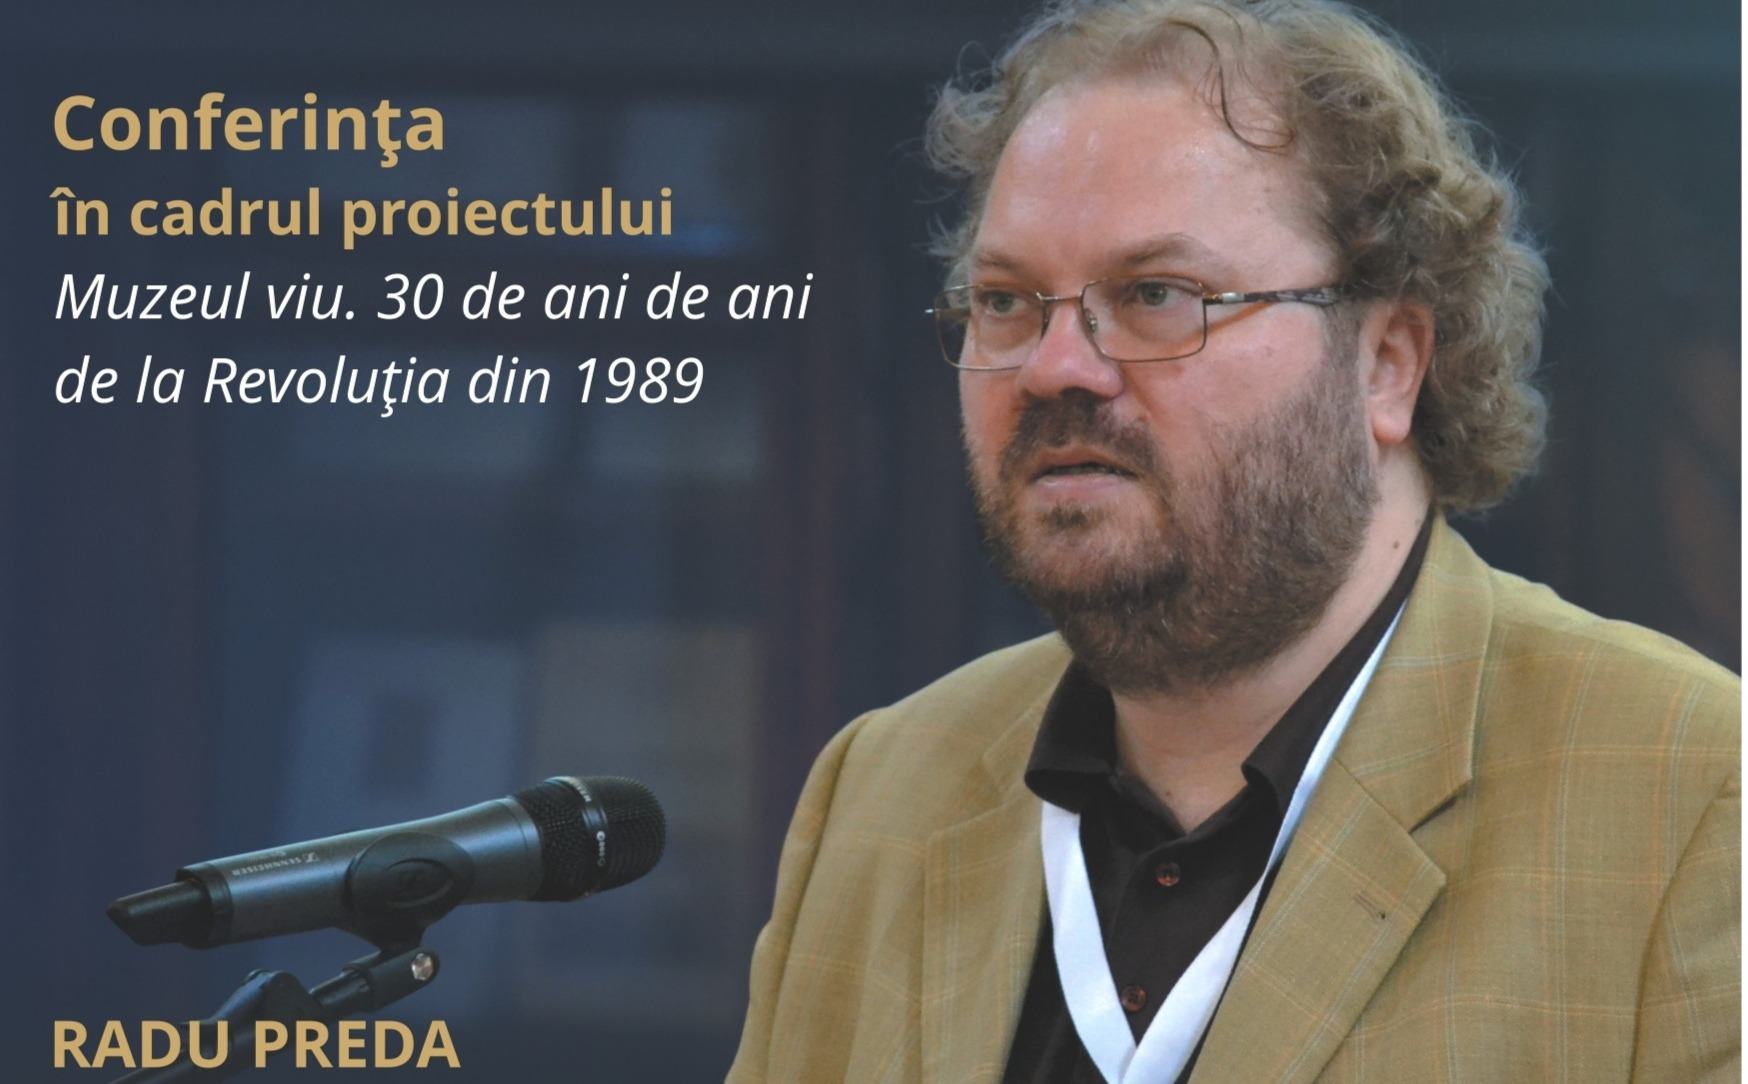 Conferința „Trei decenii de libertate. Trei decenii de neputință” susținută de Radu Preda